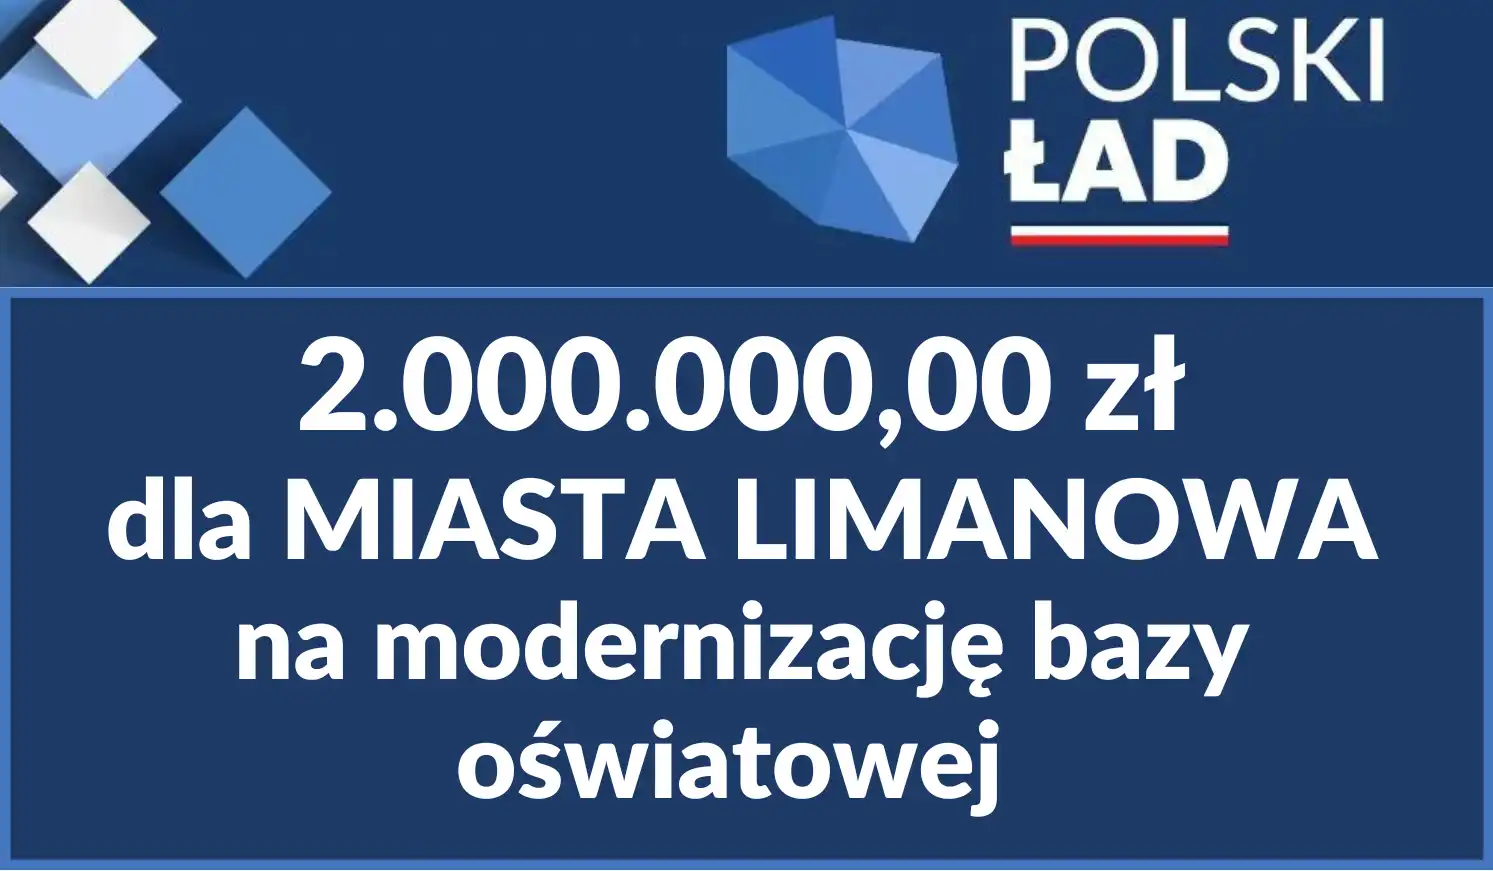 Miasta Limanowa otrzymało wsparcie finansowe na modernizację bazy oświatowej